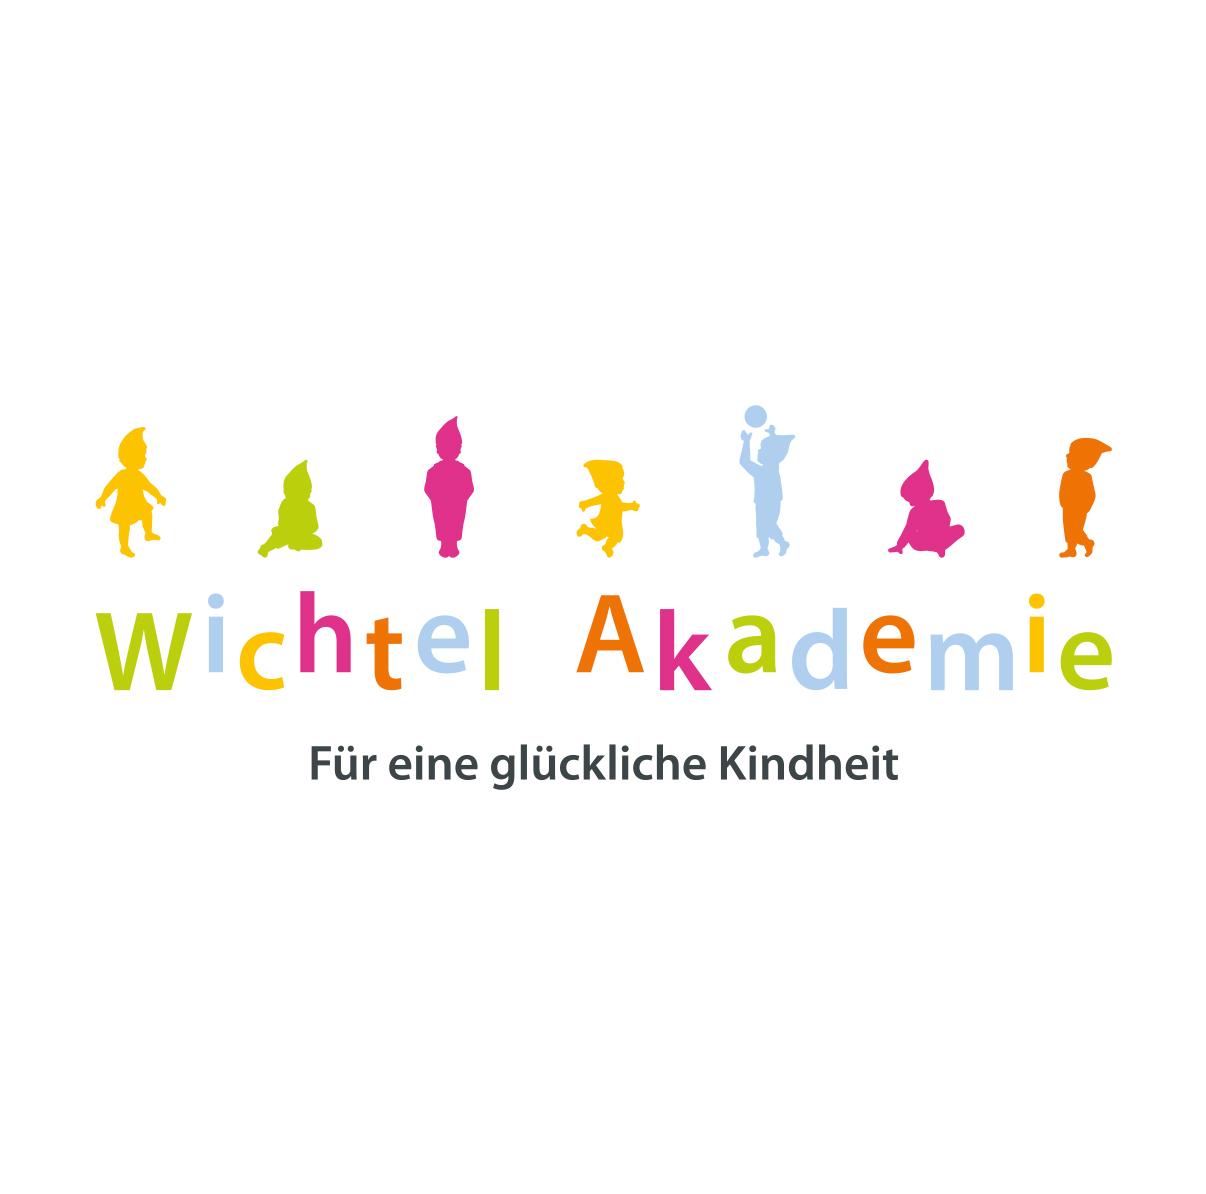 Wichtel Akademie München image